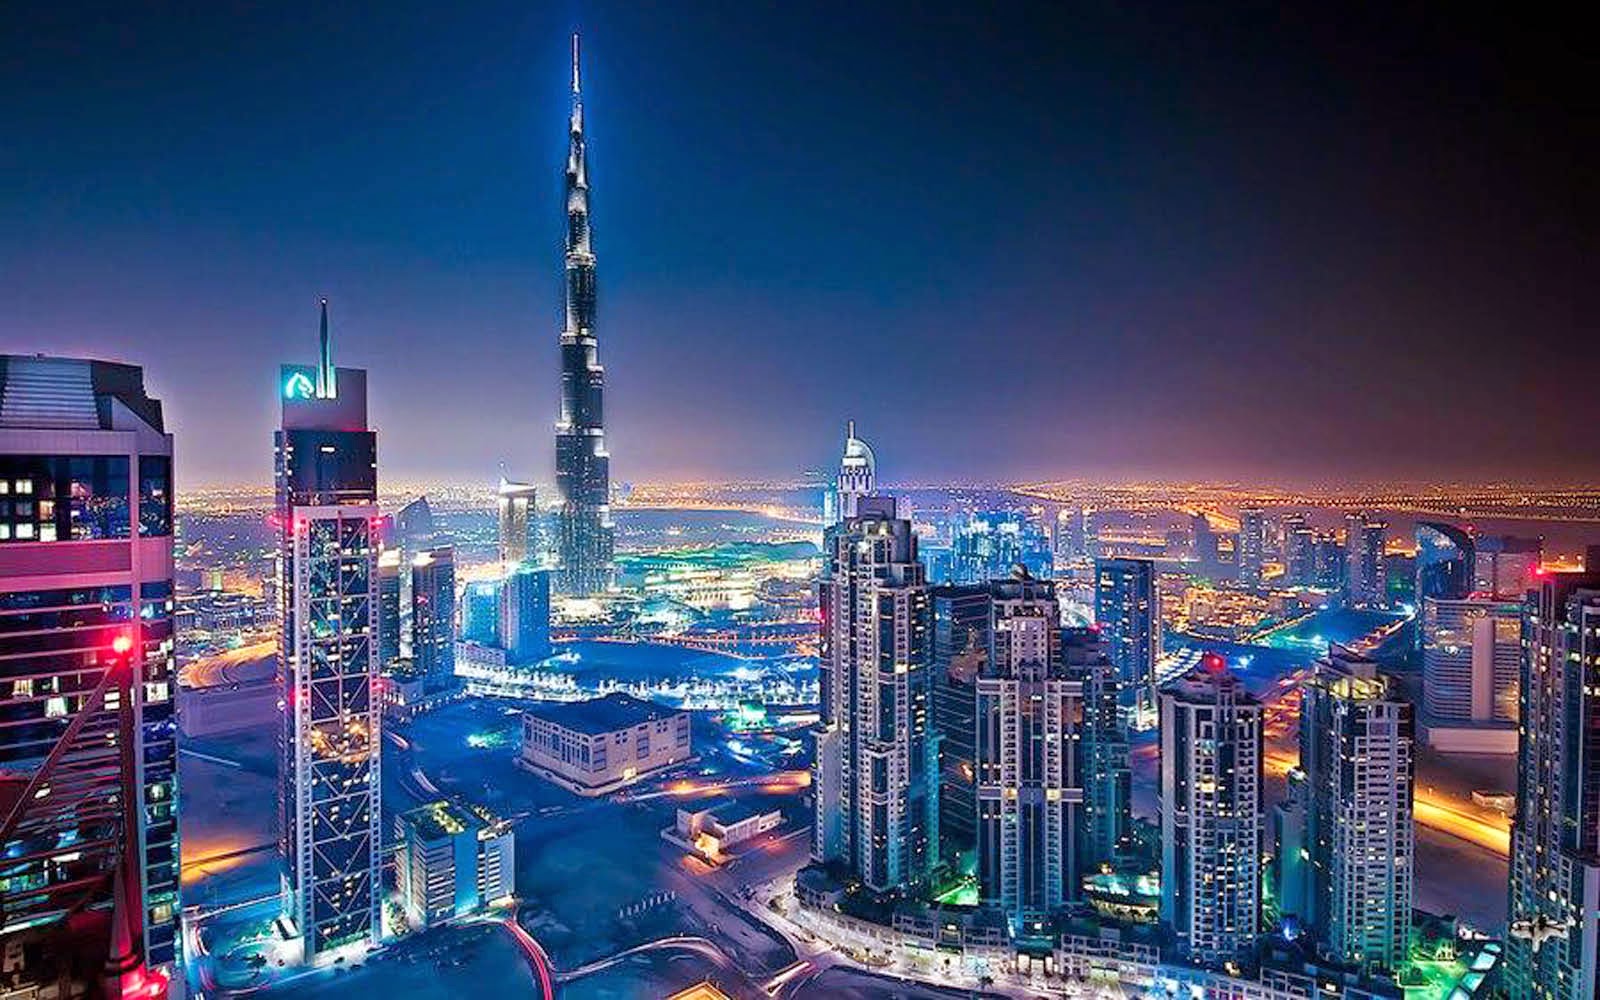 Burj Khalifa Wallpaper At Night Atoz Desktop